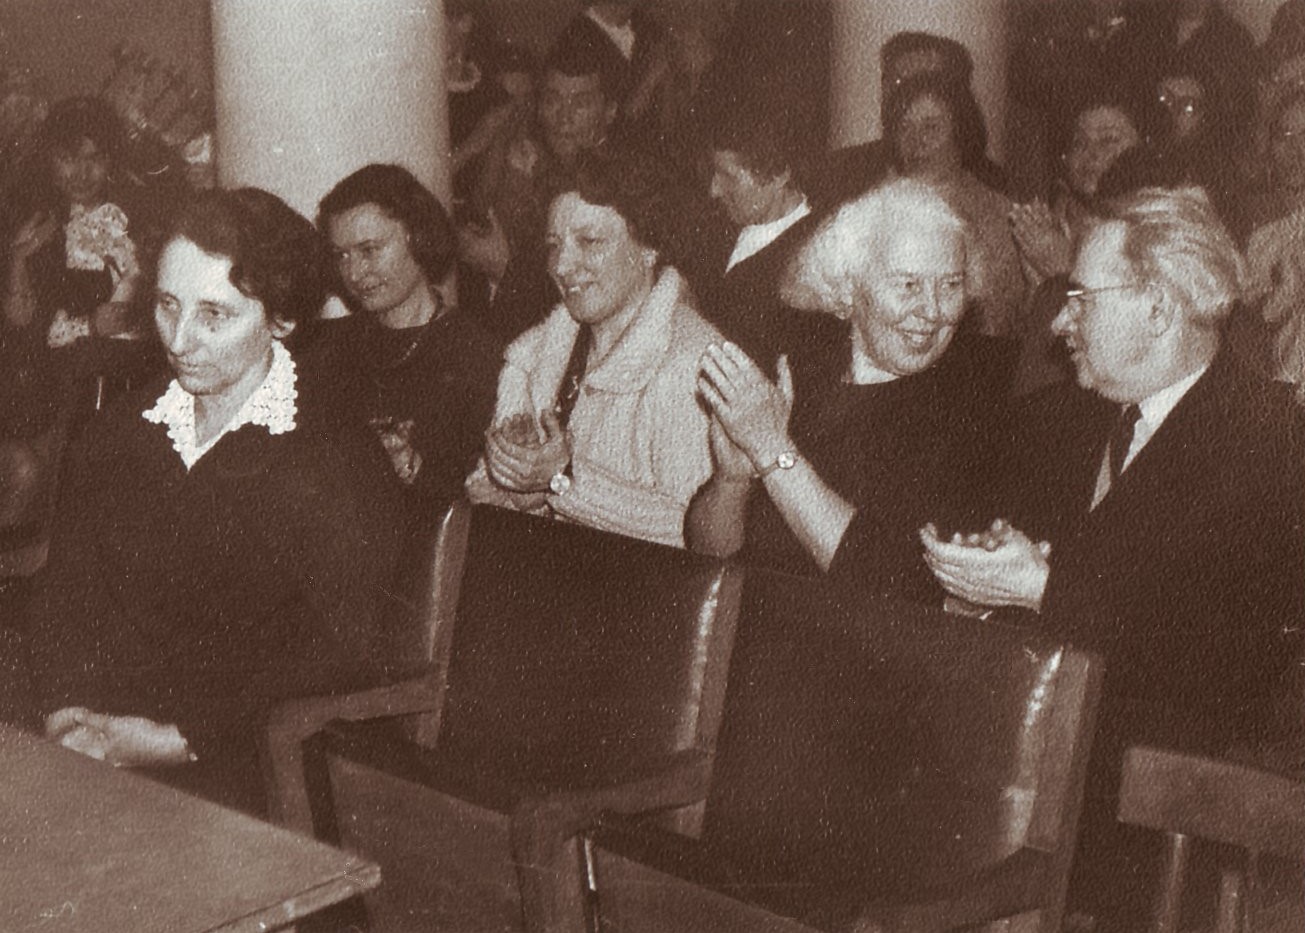 Daktaro disertacijos „Maironis“ gynimas 1969 m. vasario 11 d. Iš kairės: V. Zaborskaitė, I. Kostkevičiūtė, A. Rabačiauskaitė, M. Lukšienė, K. Lukša. Iš V. Stonytės asmeninio archyvo